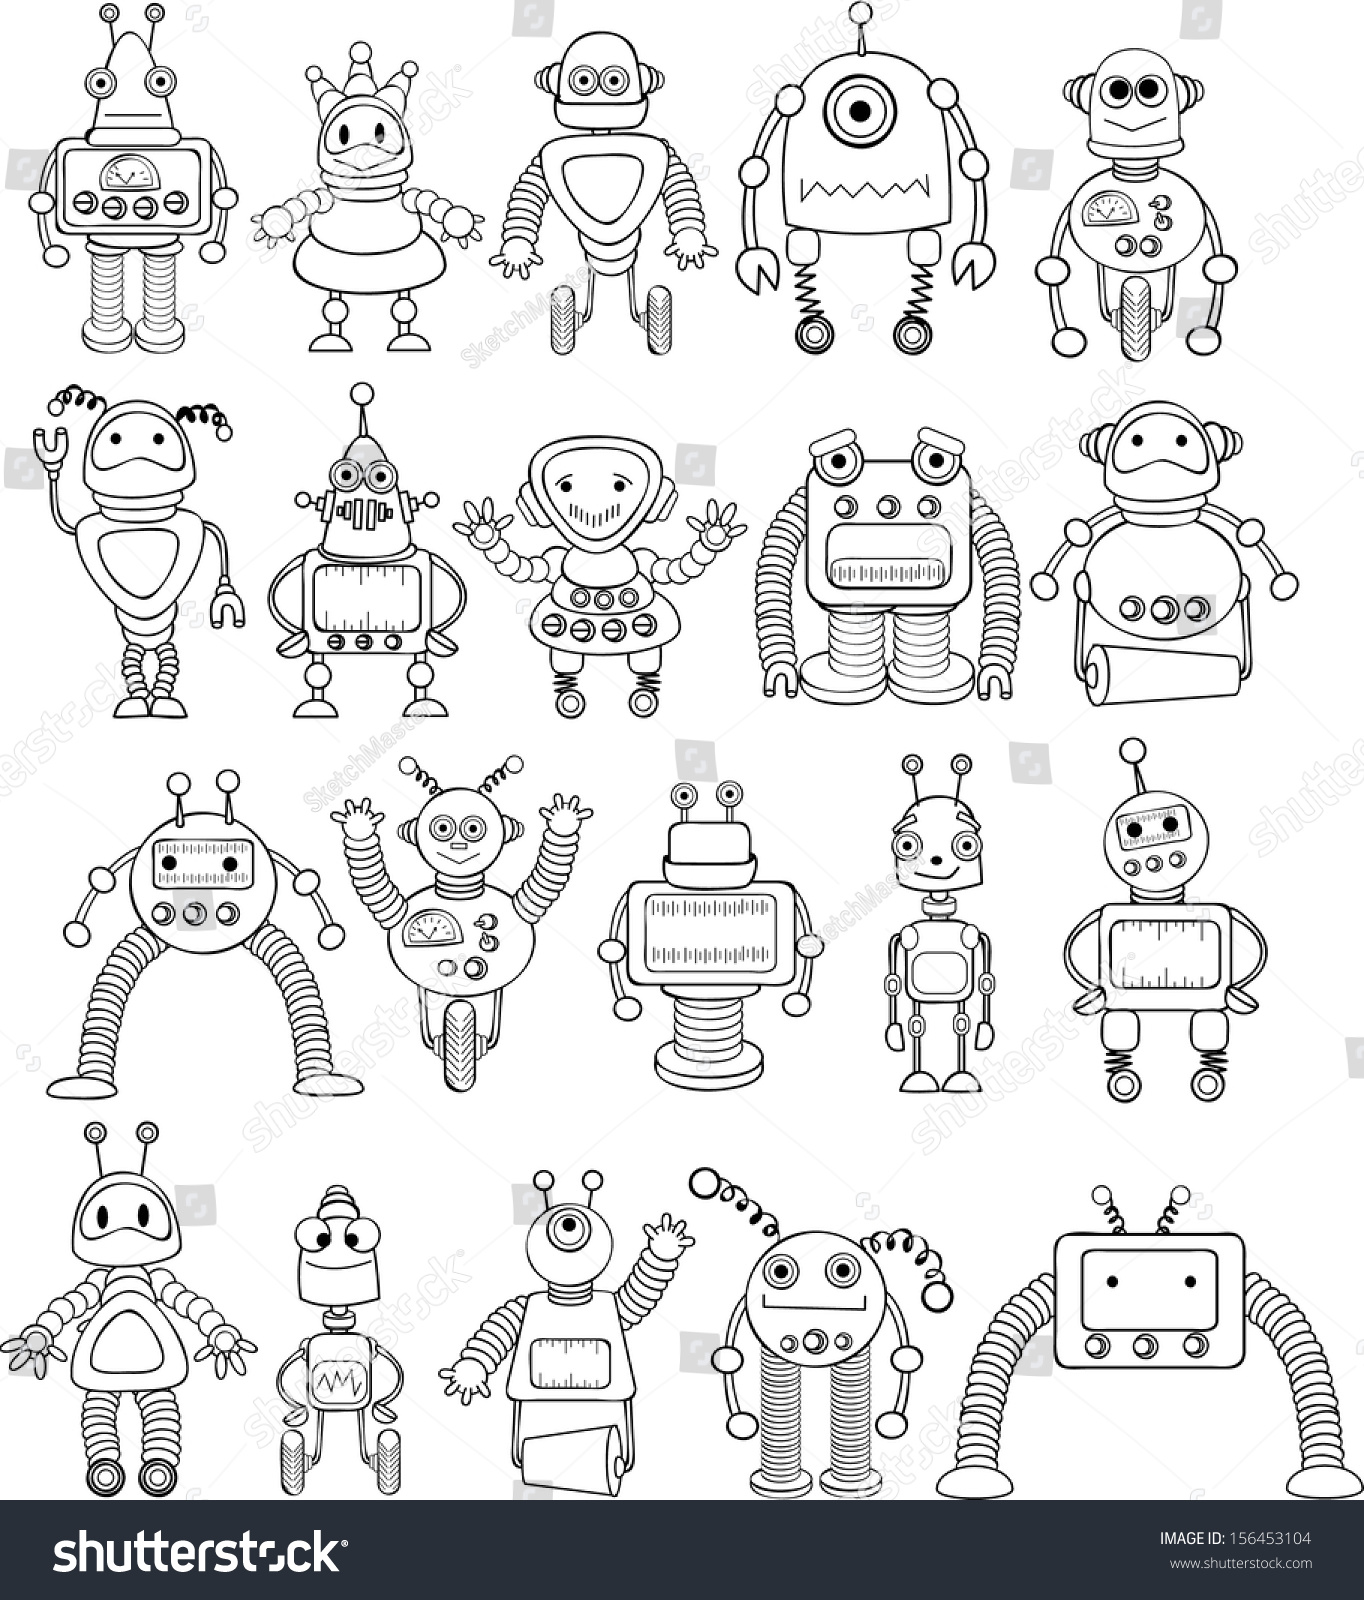 超可爱卡通机器人设计欣赏 - 爱玩甄选LOT图站